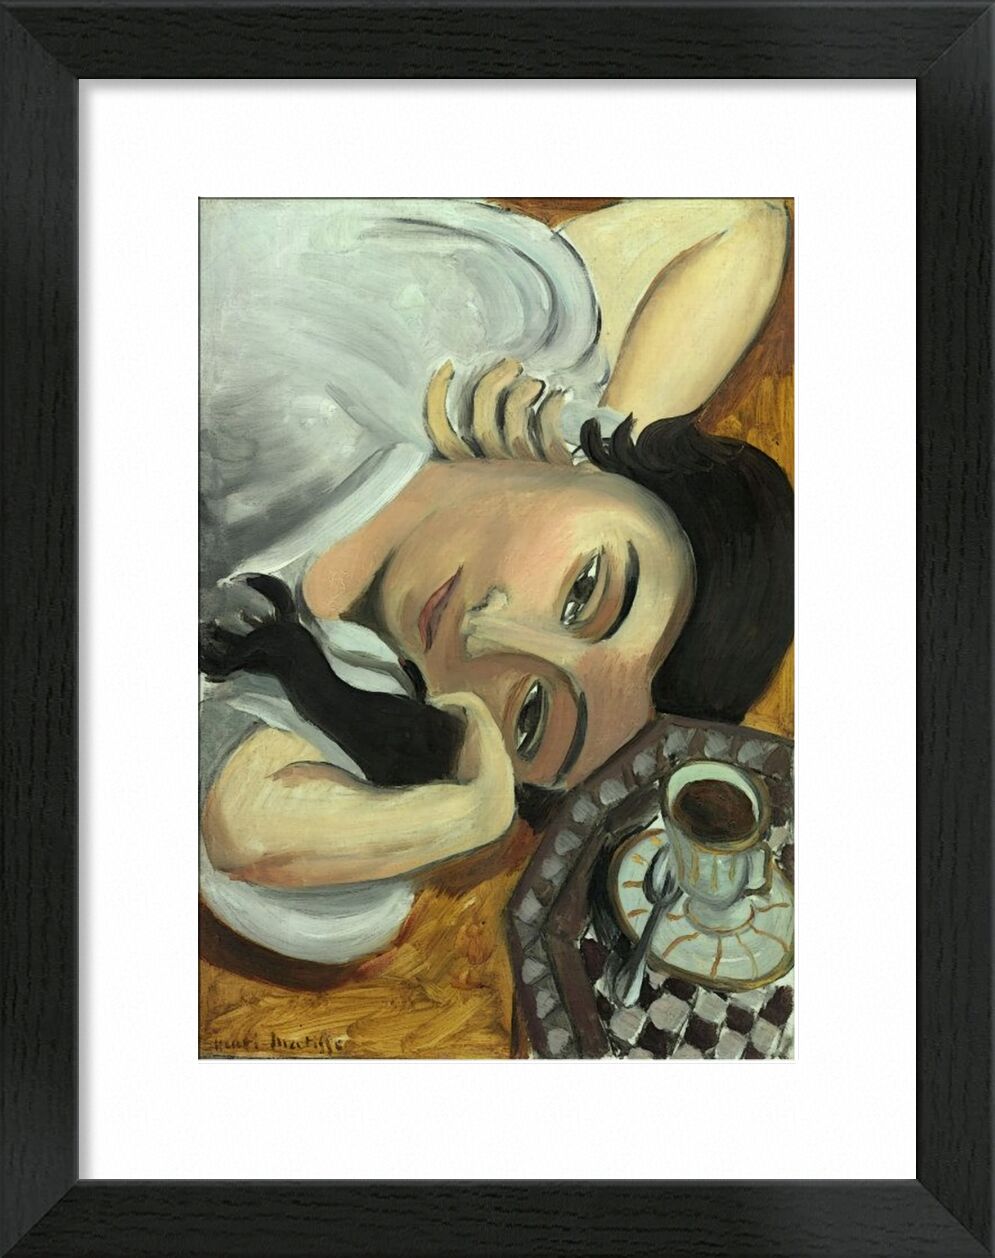 Lorette with Cup of Coffee, 1917 - Henri Matisse von Bildende Kunst, Prodi Art, Matisse, Kaffee, Bar, Kochen, Frau, braun